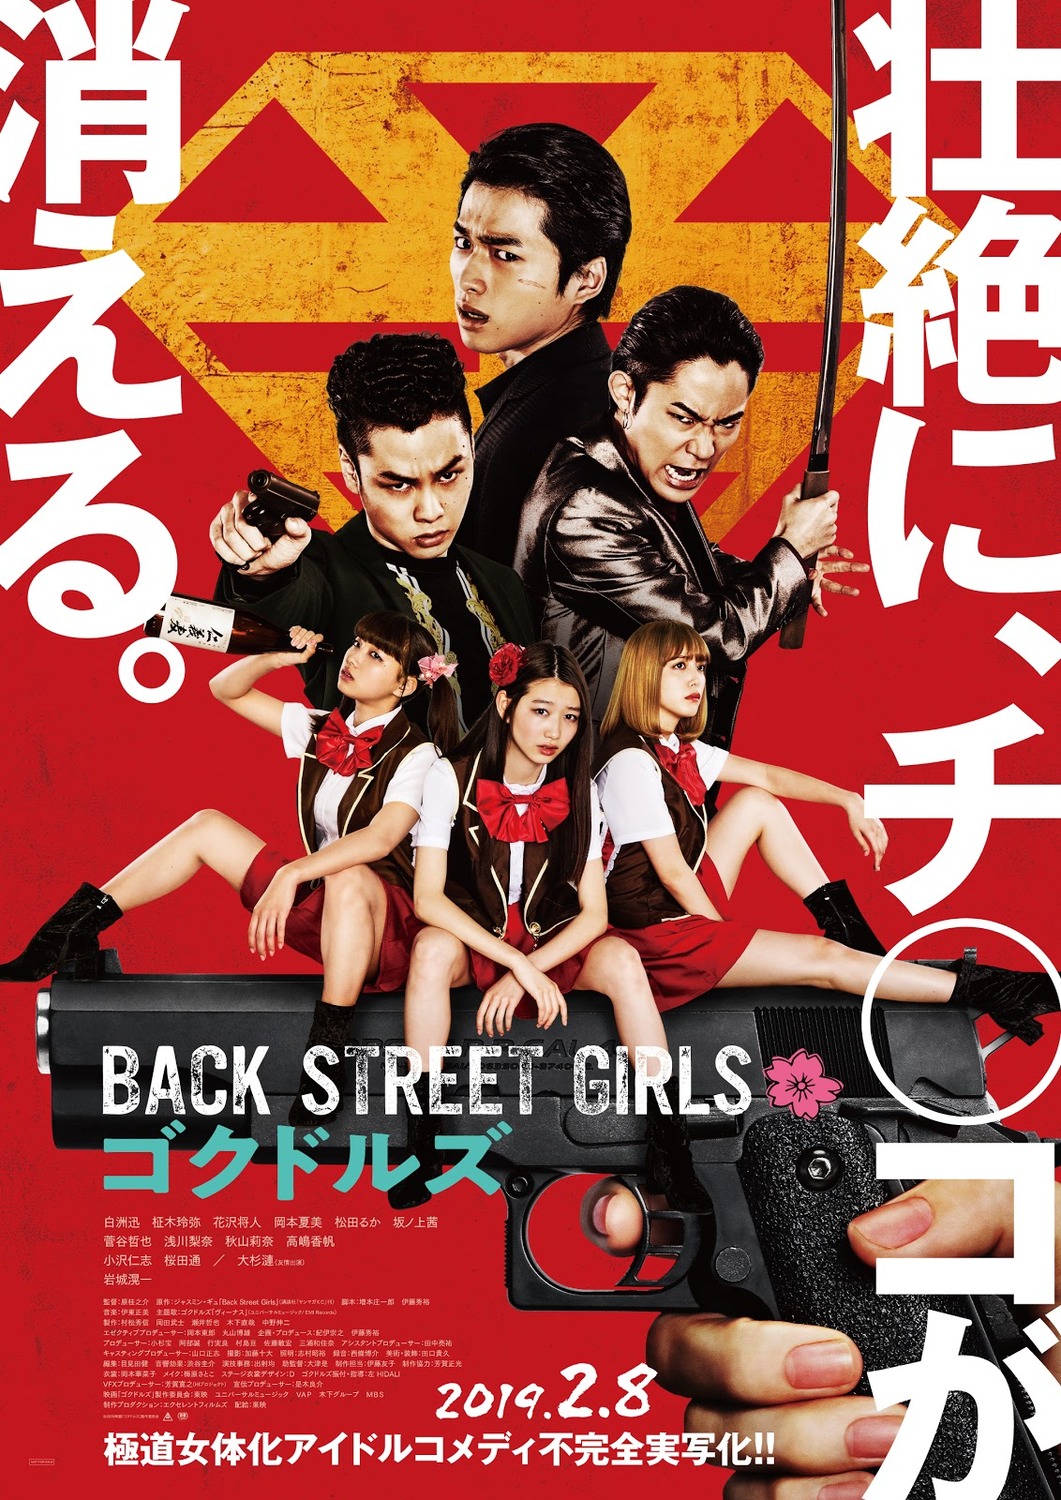 Extra Large Movie Poster Image for Back Street Girls: Gokudoruzu 